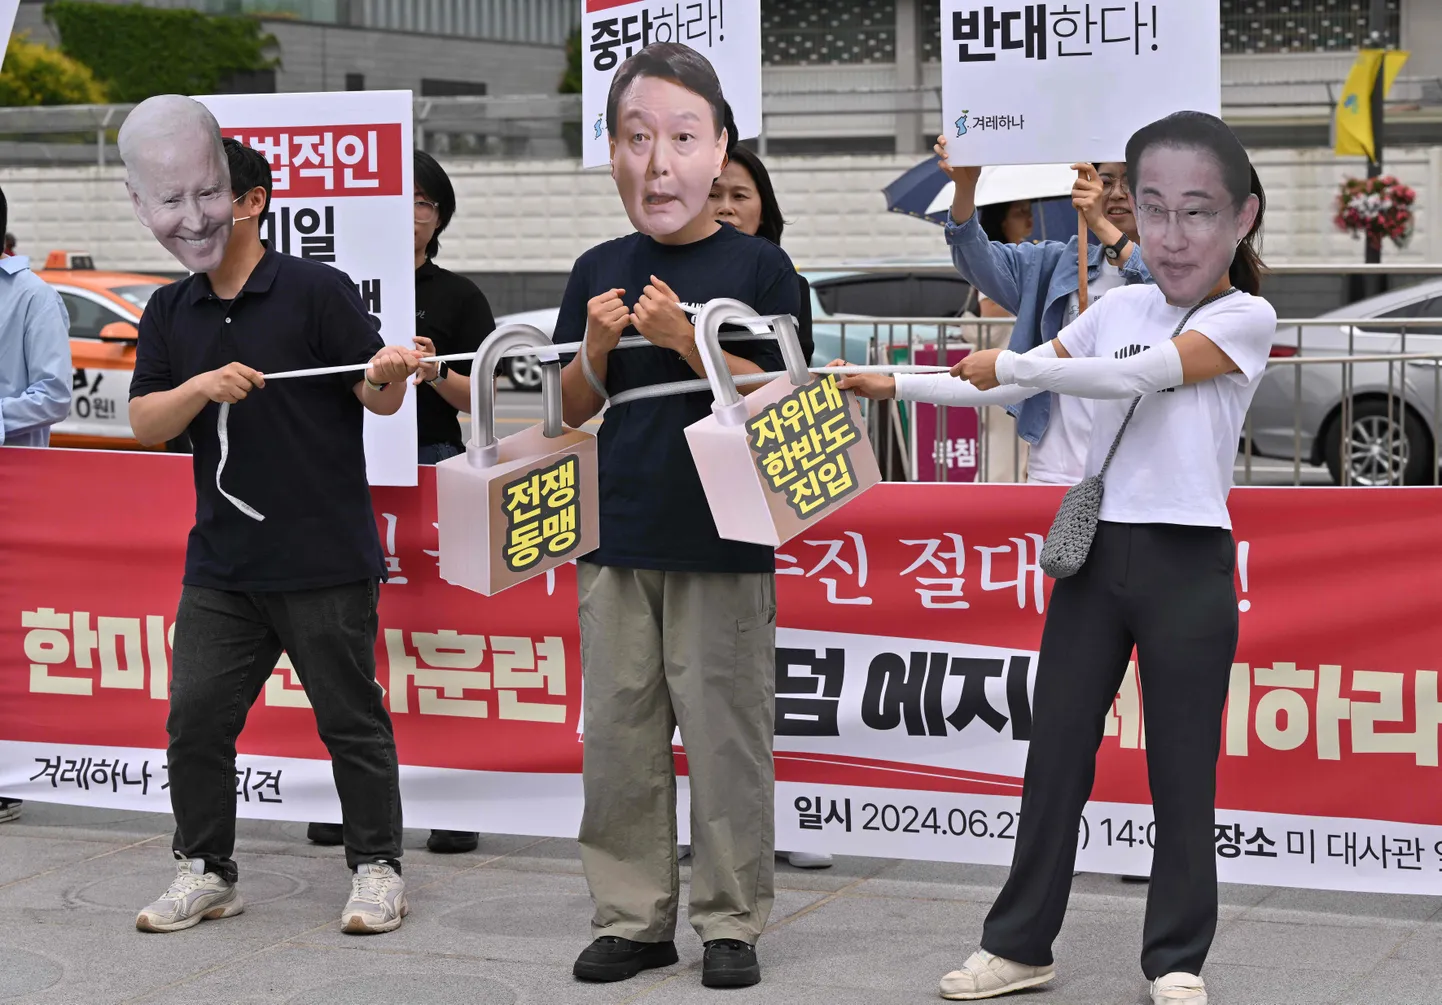 Sel 27. juunil tehtud fotol Soulis Ühendriikide suursaatkonna ees kannavad meeleavaldajad USA presidendi Joe Bideni, Lõuna-Korea riigipea Yoon Suk-yeoli ja Jaapani peaministri Fumio Kishida näoga maske ning protesteerivad papist tabalukkudega, millele on kirjutatud «sõjaliit», kolmepoolsete sõjaliste õppuste Freedom Edge vastu. Kolm lääneriiki korraldavad uusi mastaapseid ühisõppusi, teatas Souli ühendatud kindralstaap varem. Kolmiku eesmärk on seista jõuliselt vastu viimasel ajal üha sõjakamaks muutuvale Pyongyangile.